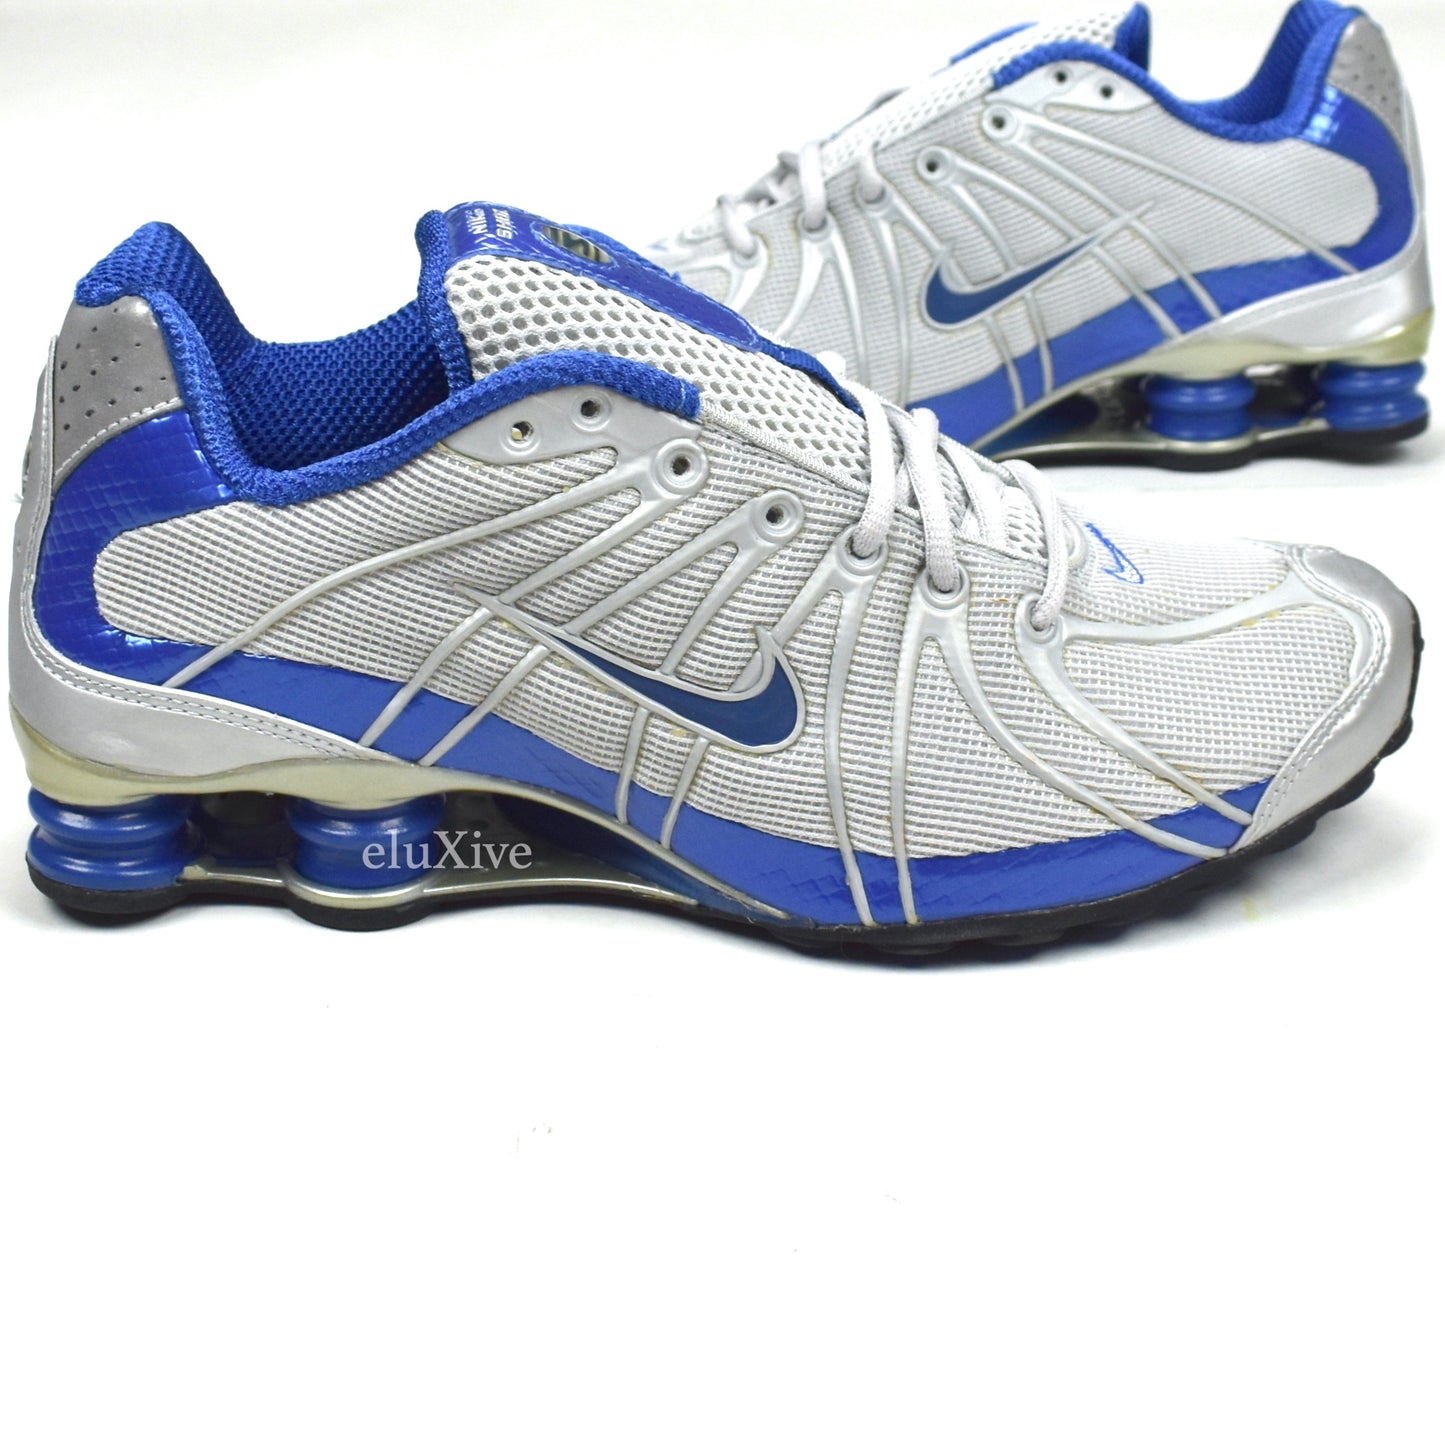 Nike - Shox Turbo OZ Gray / Atlantic Blue / Silver (2005)